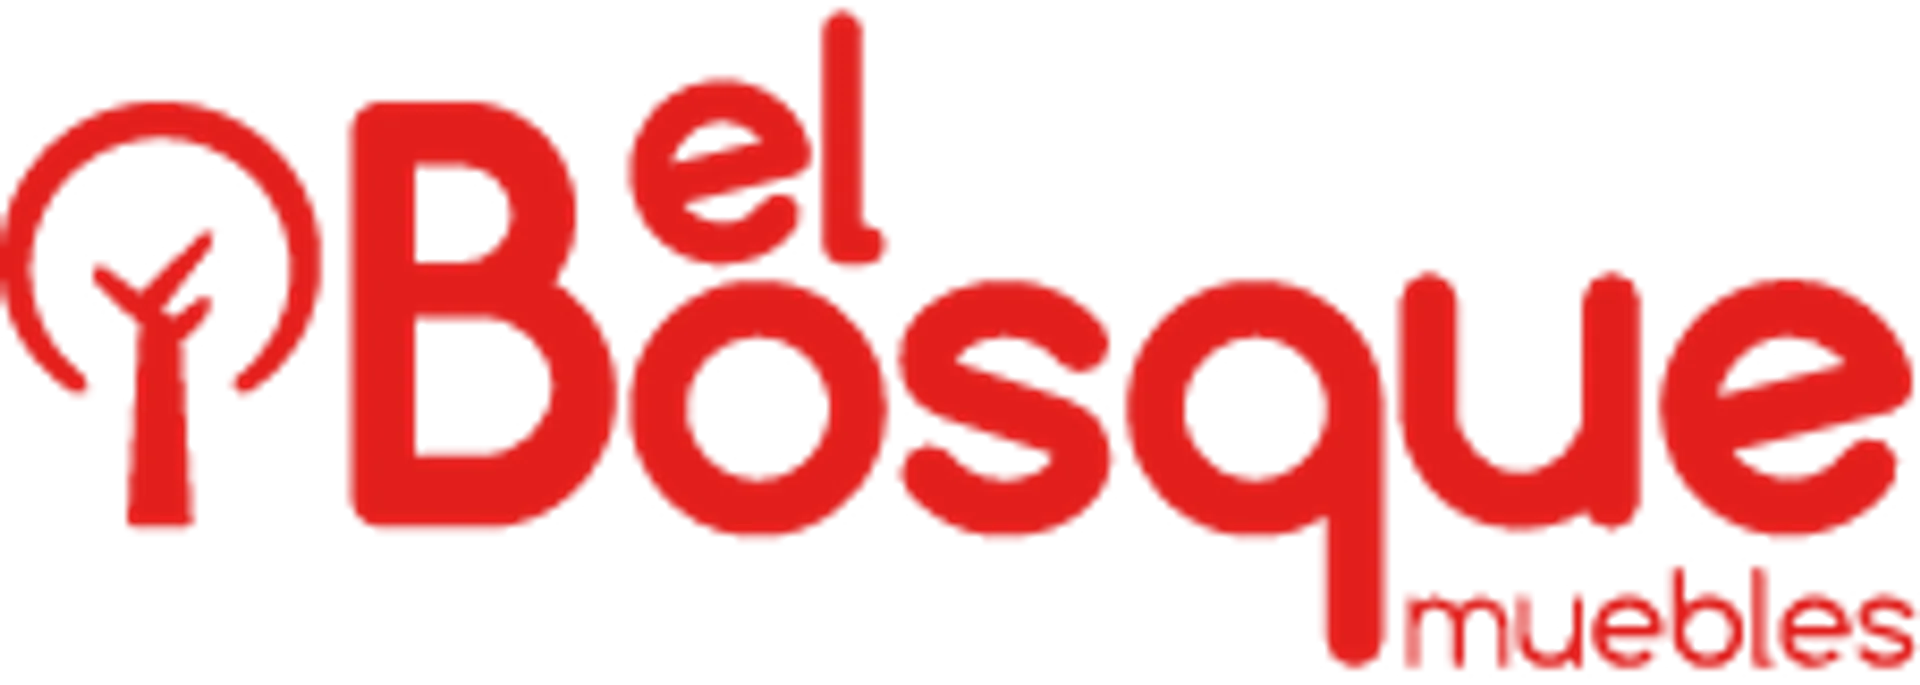 MUEBLES EL BOSQUE logo de catálogo